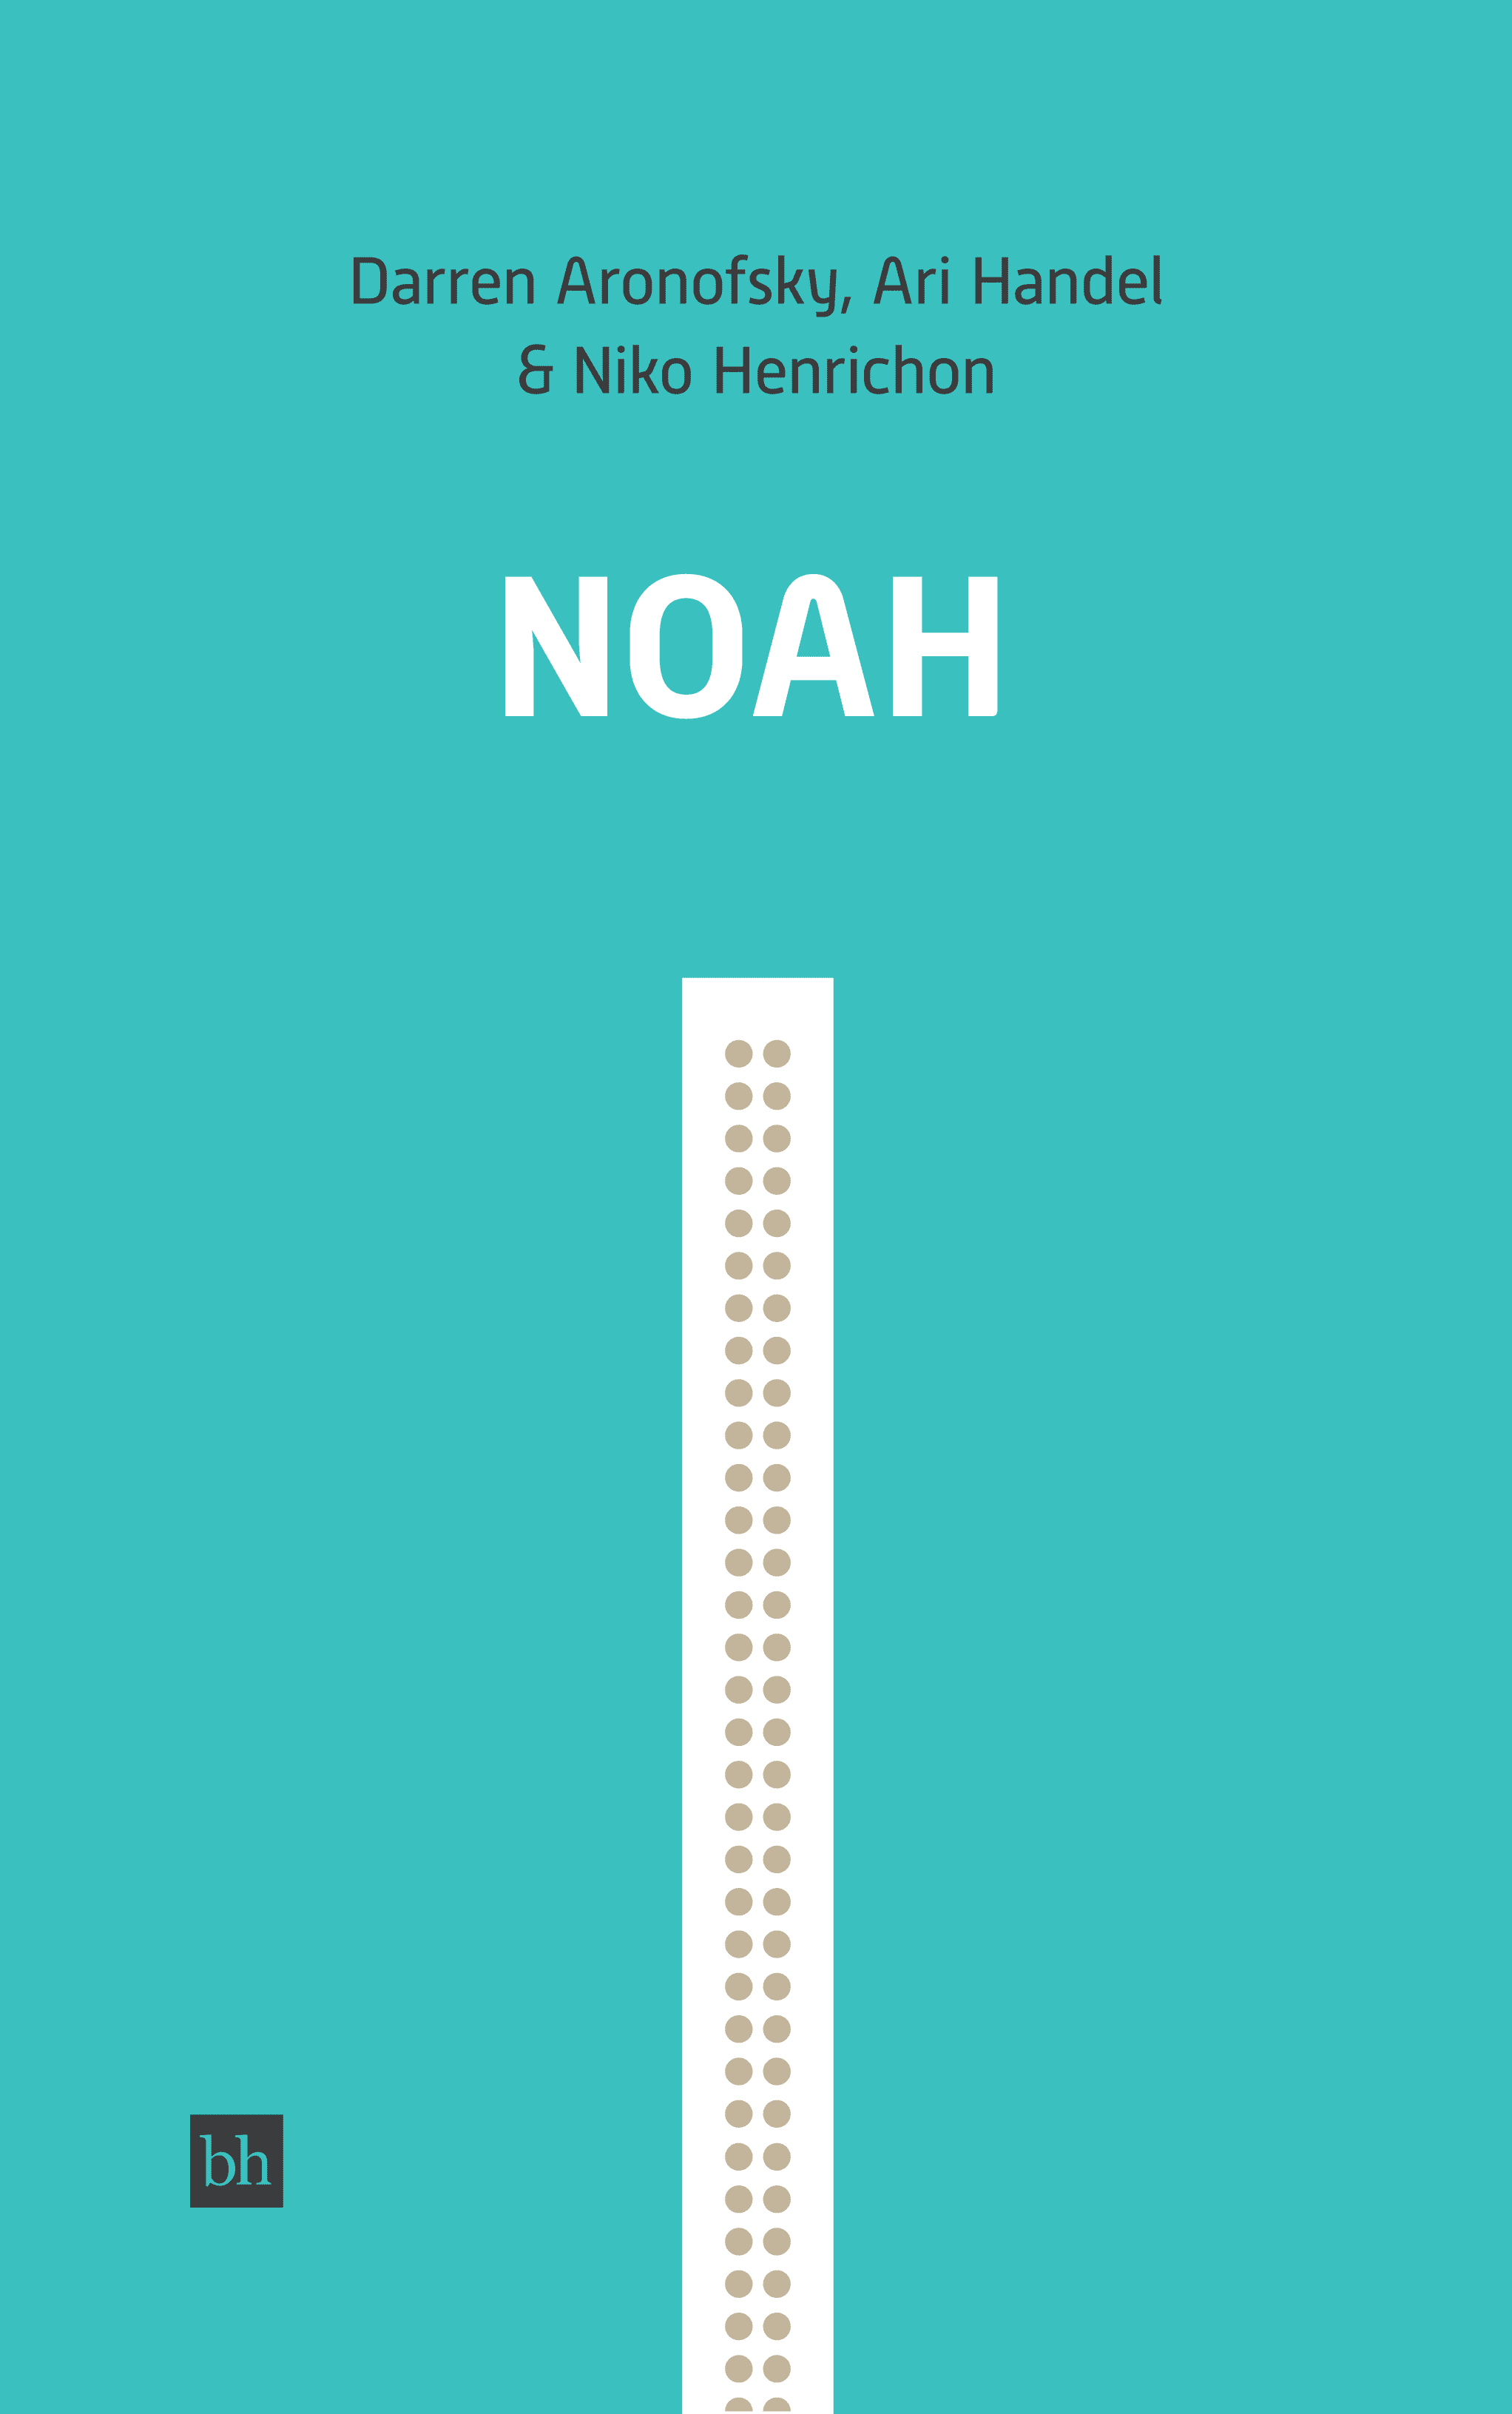 Noah by Darren Aronofsky and Ari Handel